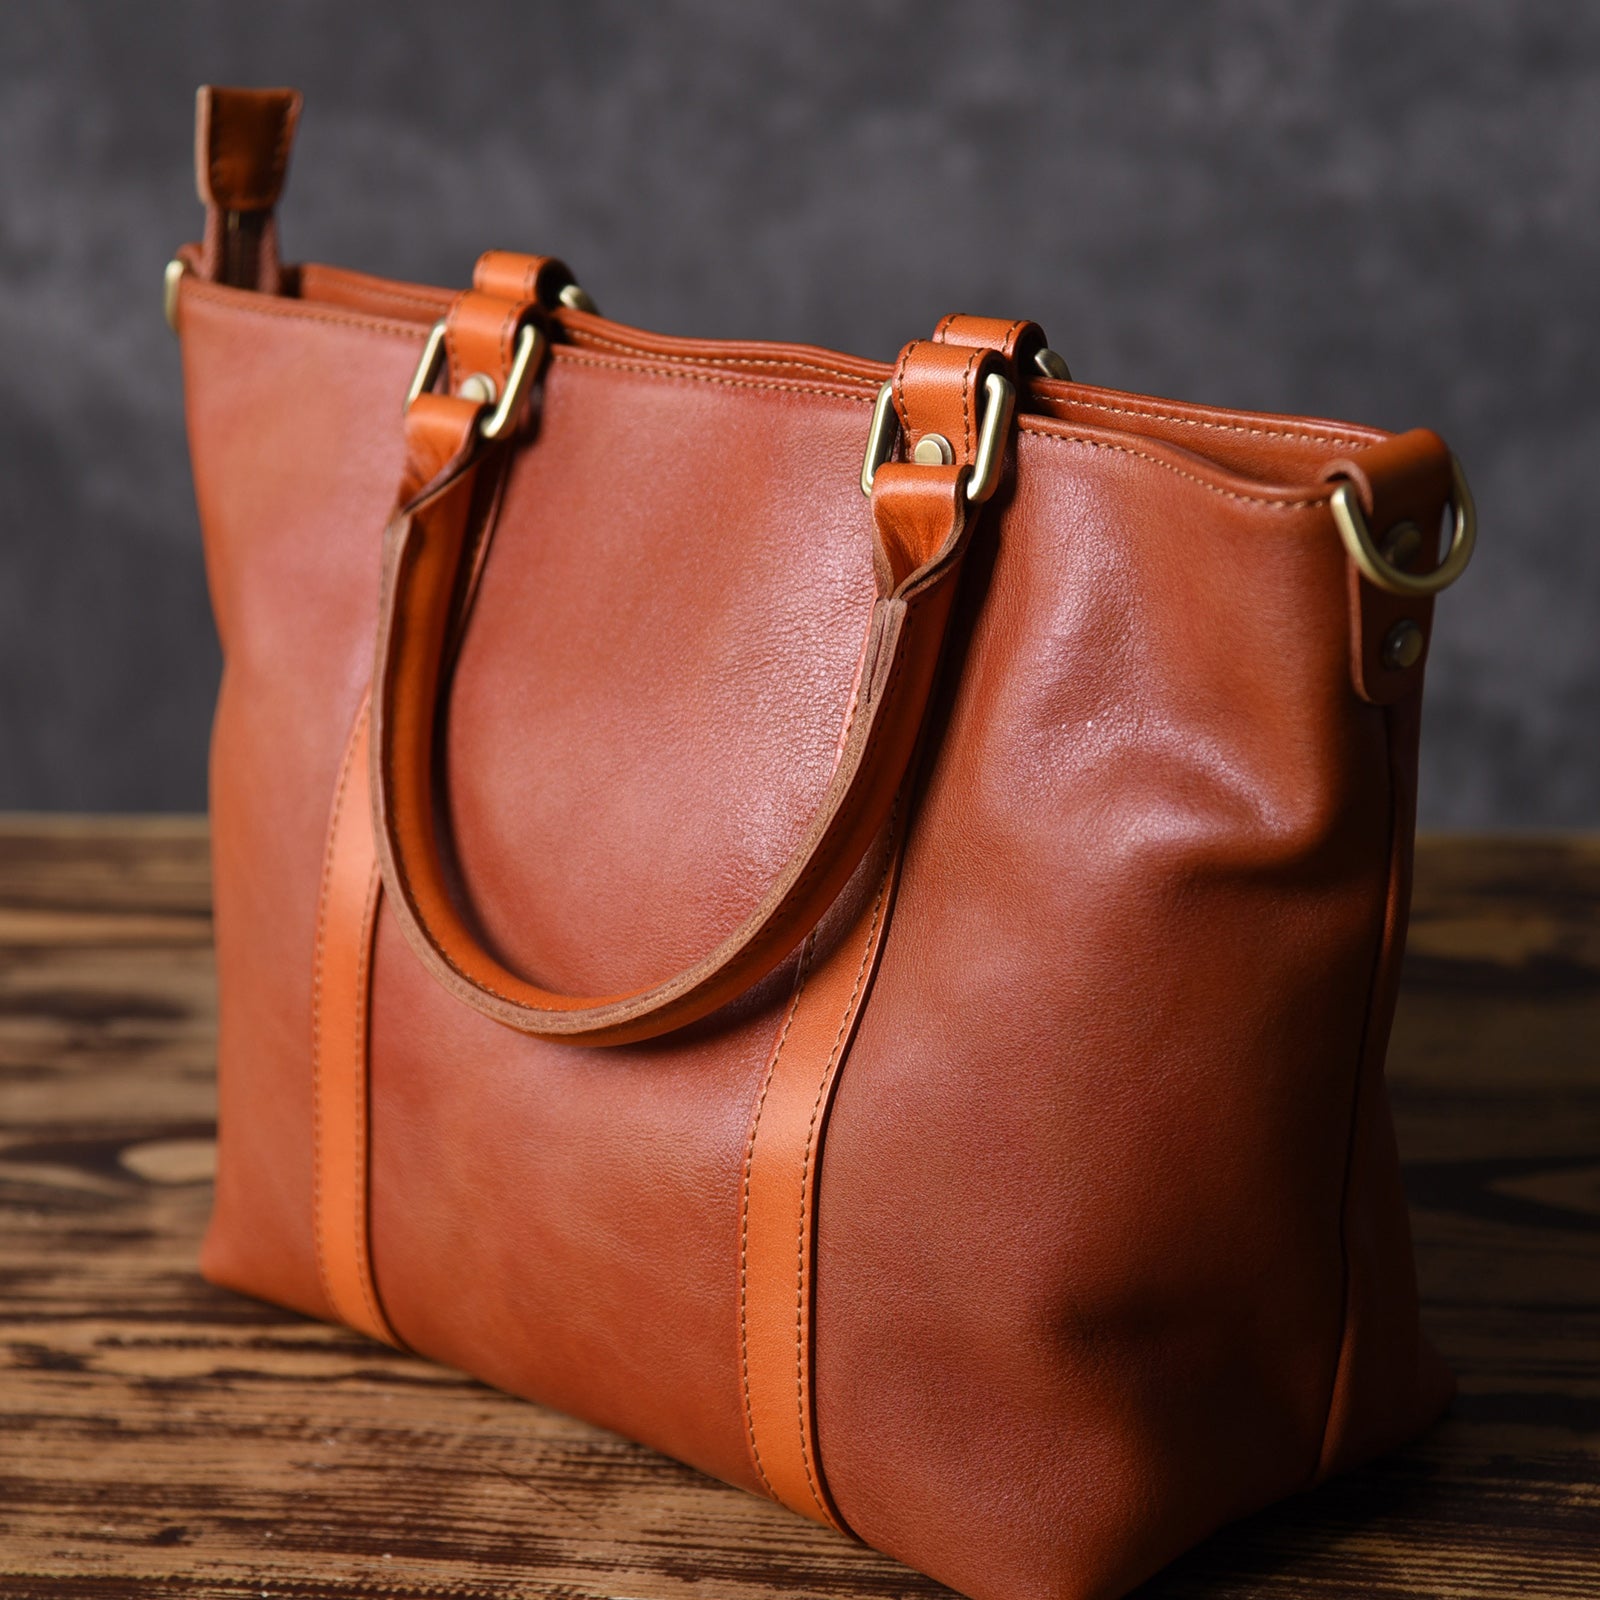 Brown Leather Women Handbag Work Bag Shoulder Bag For Women 2 2048x2048 ?v=1571318118